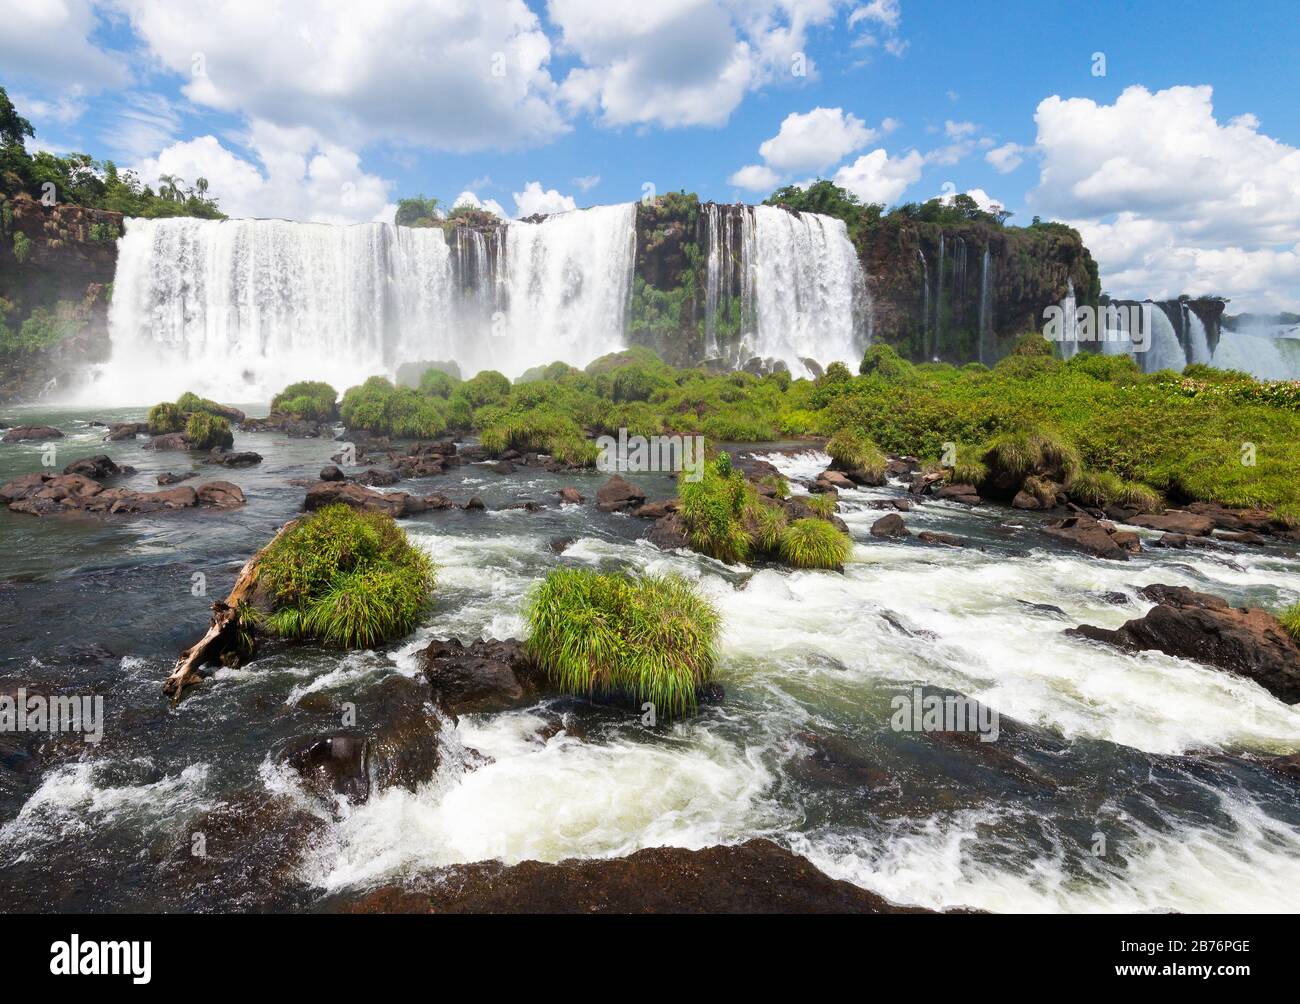 Cascate di Iguaçu nel Parco Nazionale di Iguazu in Brasile. Flusso d'acqua dal fiume Parana che mostra cascate e forte ruscello d'acqua. Foto Stock